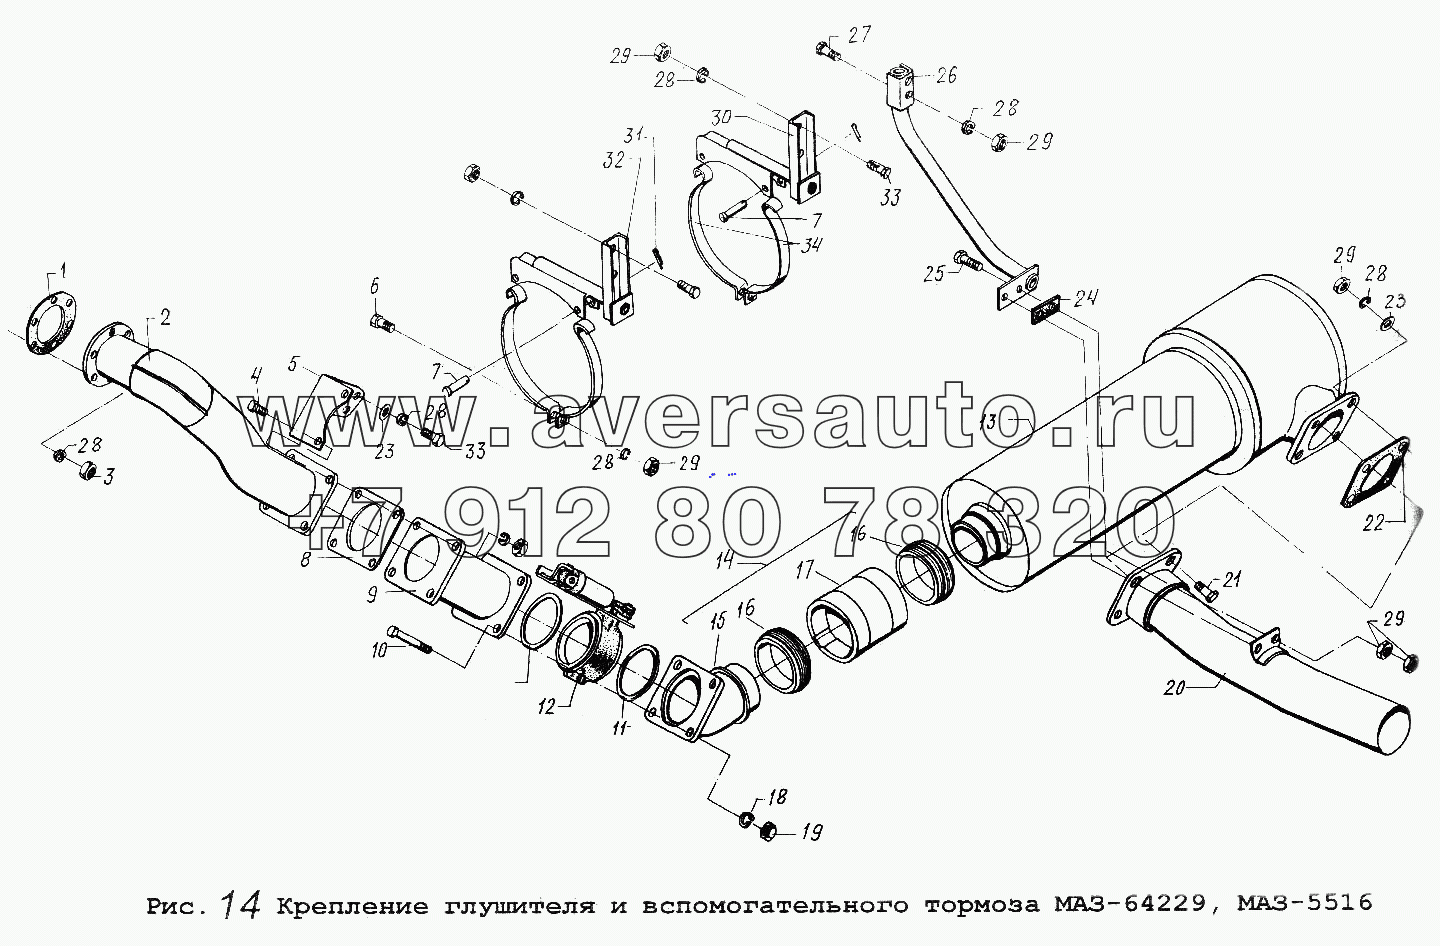 Крепление глушителя и вспомогательного тормоза МАЗ-64229, МАЗ-5516